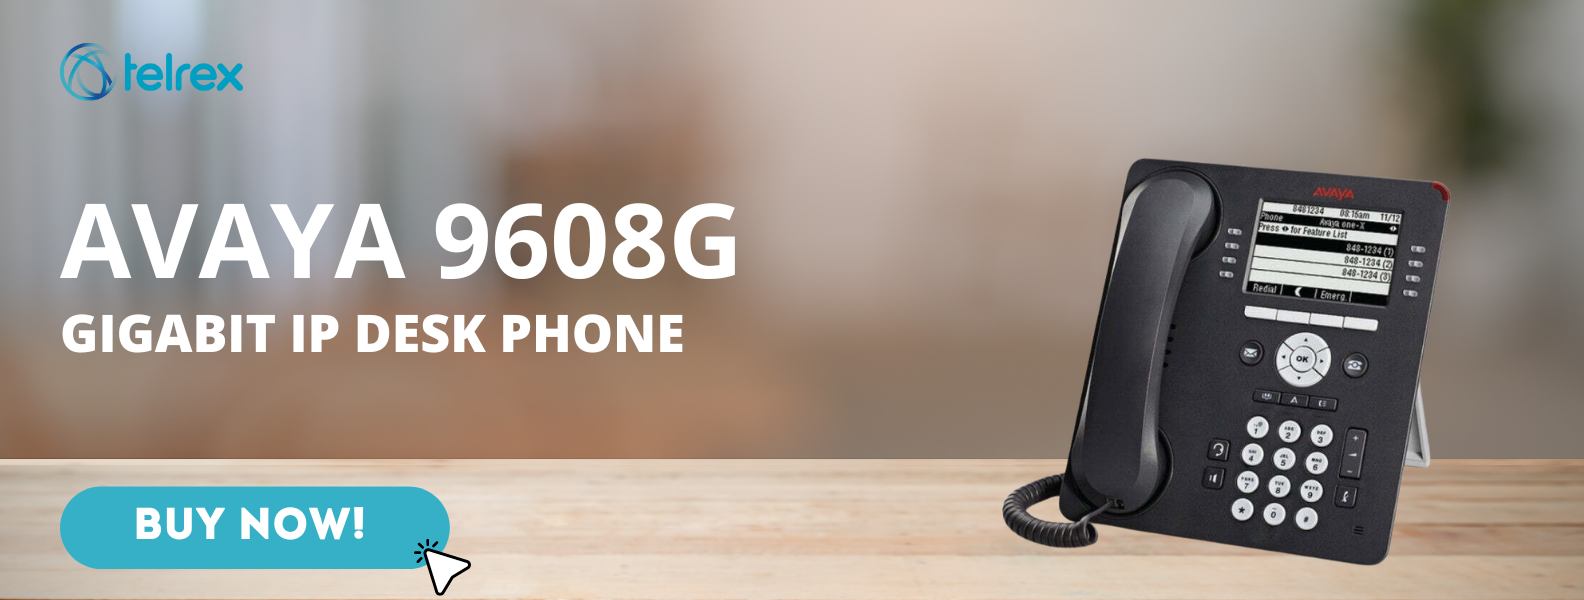 Avaya 9608G Gigabit IP Desk Phone